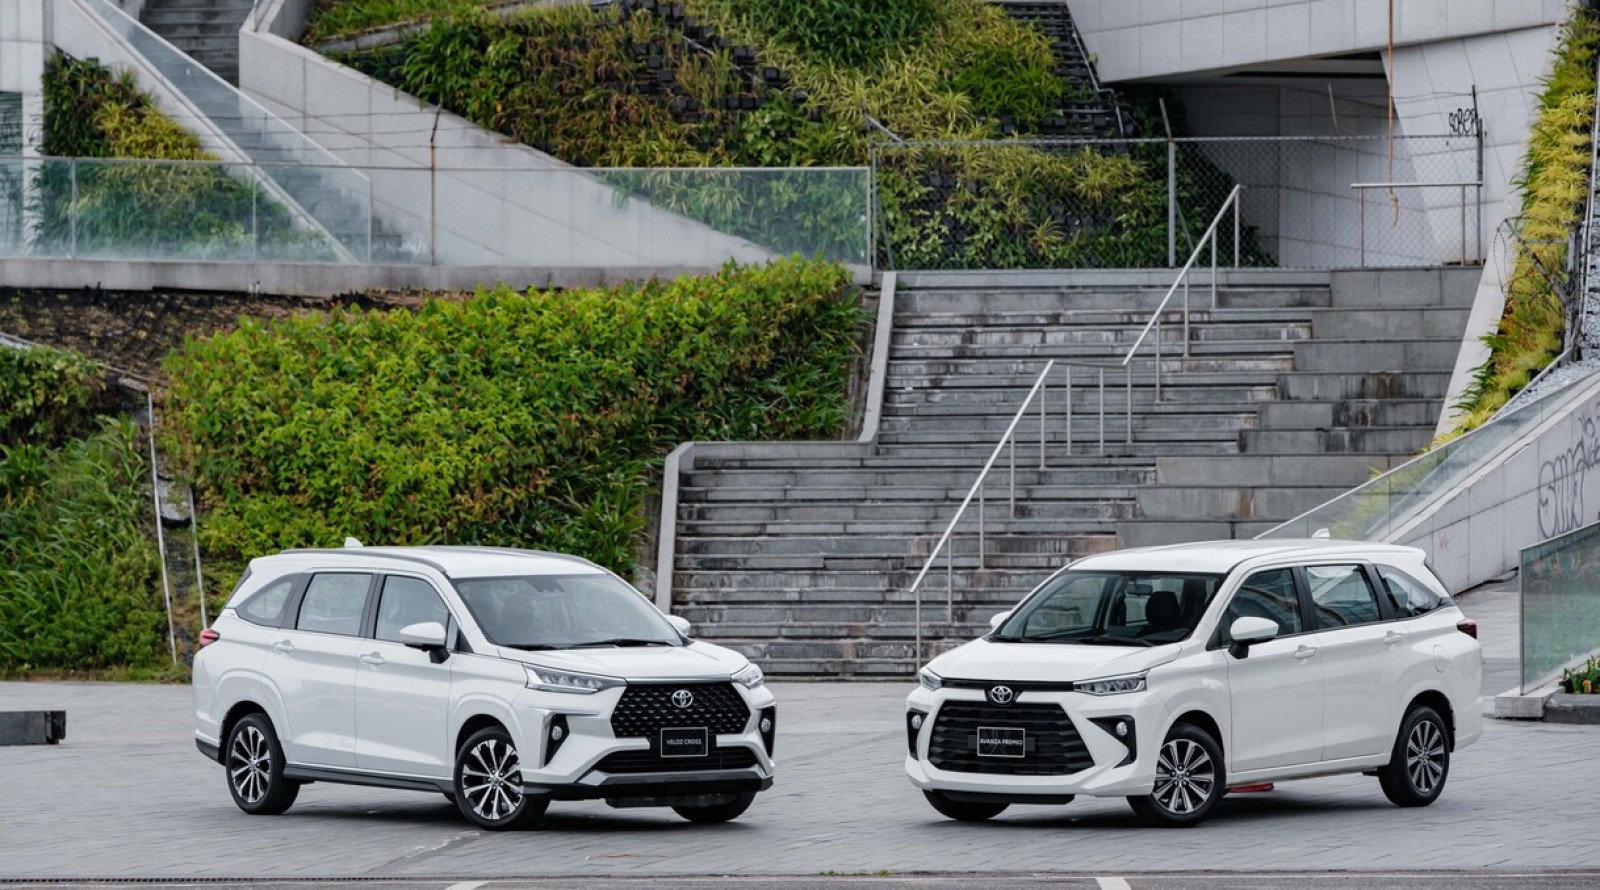 Tổng Hợp Các Dòng Xe Toyota Phổ Biến Tại Việt Nam Và Bảng Giá Mới Nhất